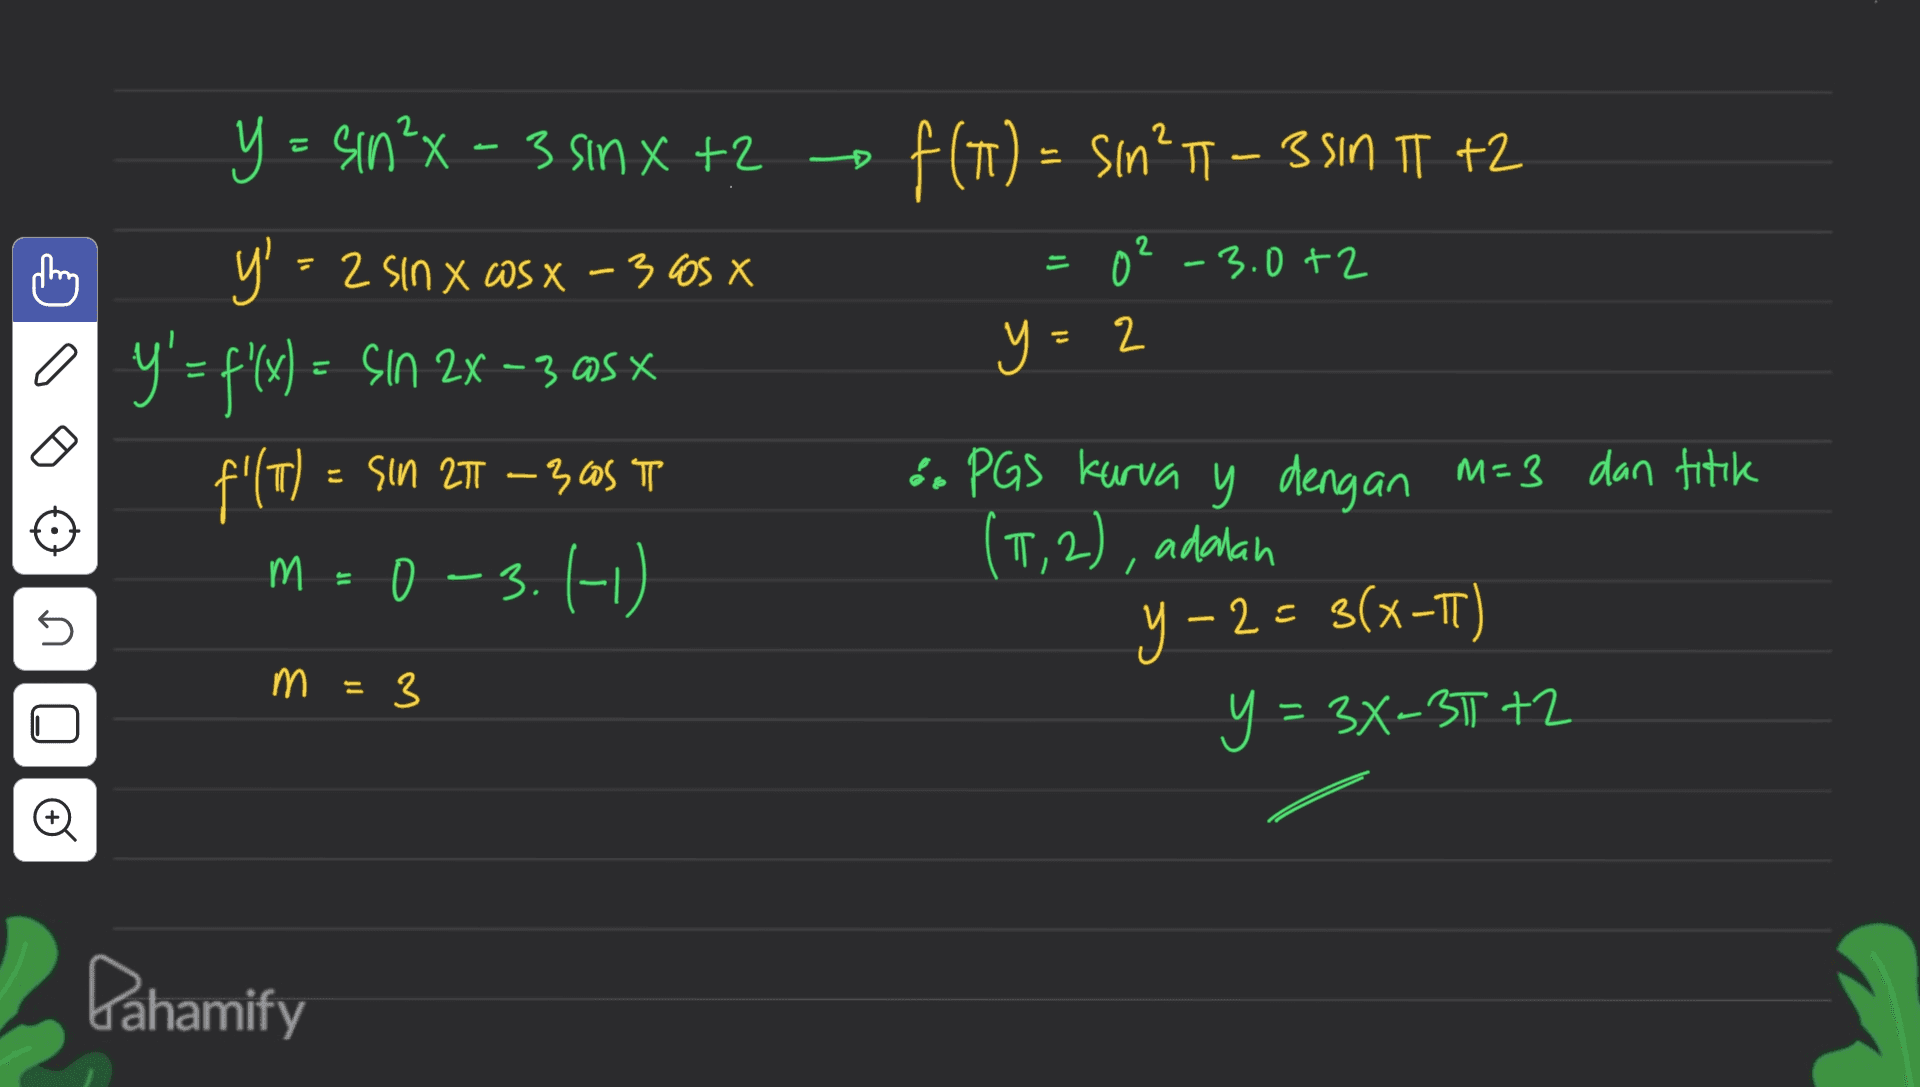 2 - f(1) = sın” 1 – 3 SIN TT +2 0²-3.0+2 y. 0 +2 2 y = sin²x - 3 sinxt? y' = 2 sin x cos x - 3005 X y'= fx) =- Sın 2x –3@sx f'(T) = M = 0 -3. (-1) a = sin 2T -30S T М. 0 - & PGS kurva y dengan M=3 dan titik (5,2), adalah y-2 = S(x-TT) 3 y = 3X-3172 - 5 3 М. 3 2 = Pahamify 